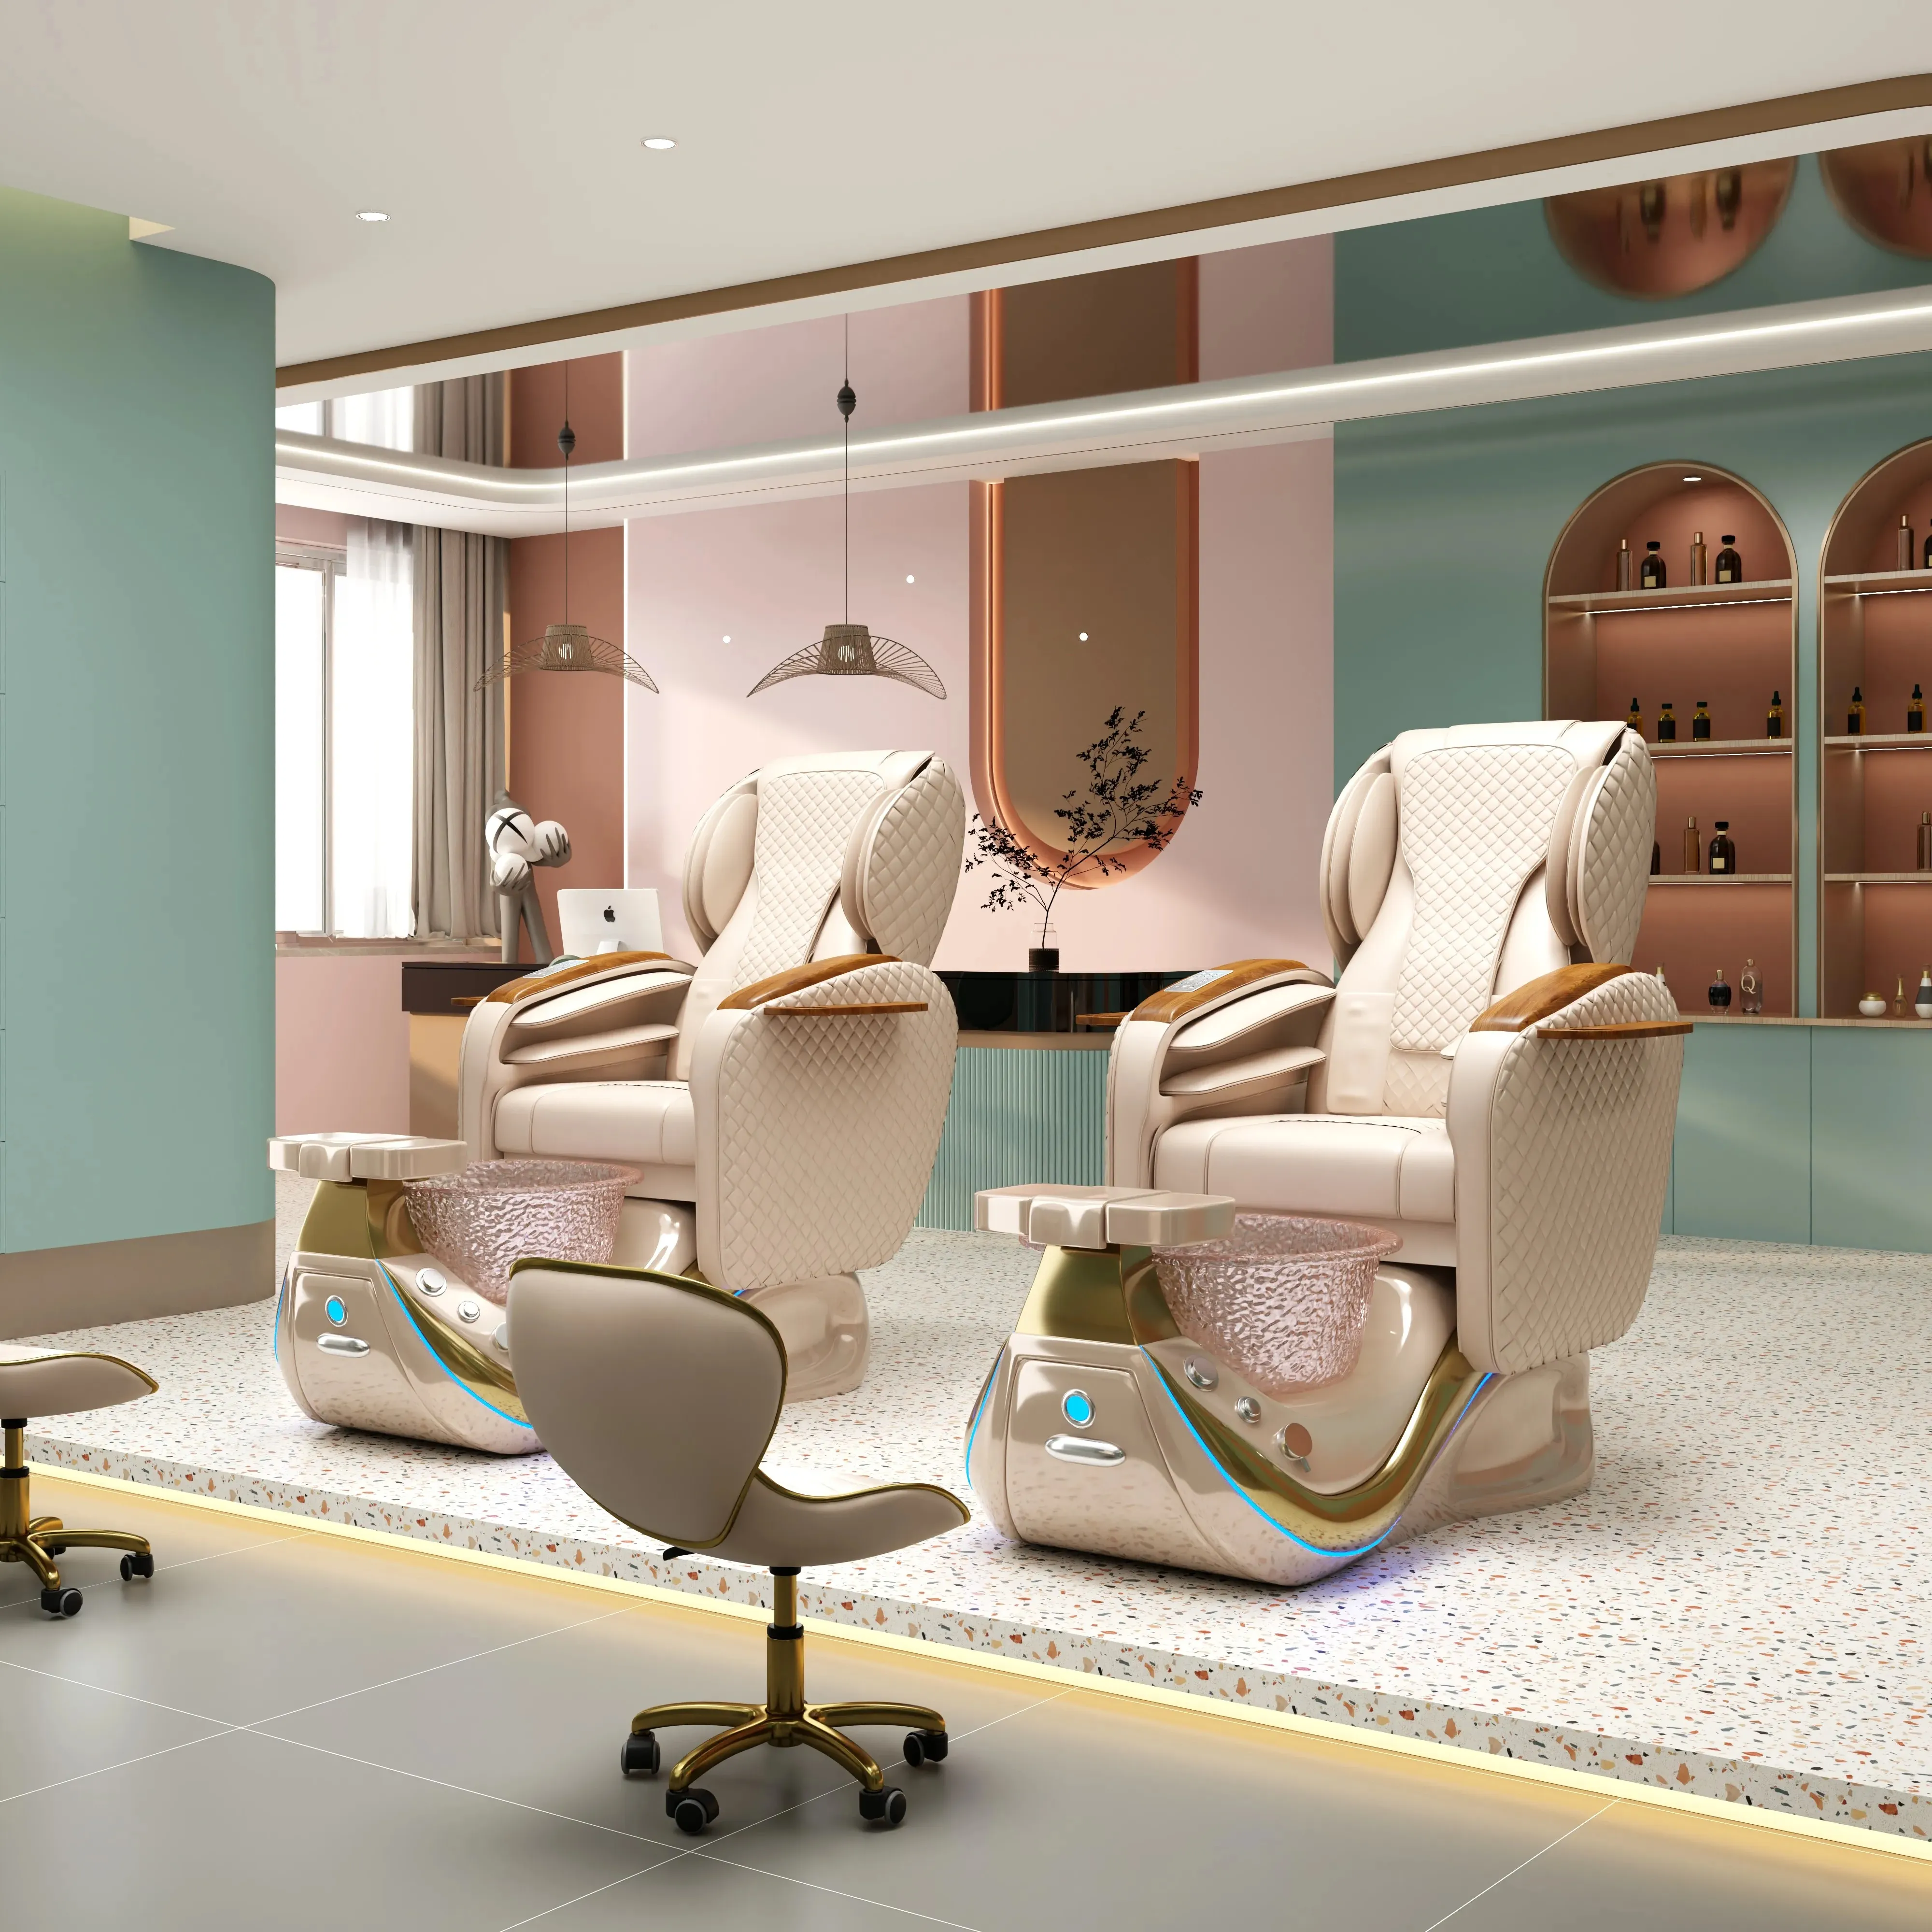 Salão de beleza móveis mão humana massagem pedicure cadeira pé spa pedicure elétrica cadeiras para venda